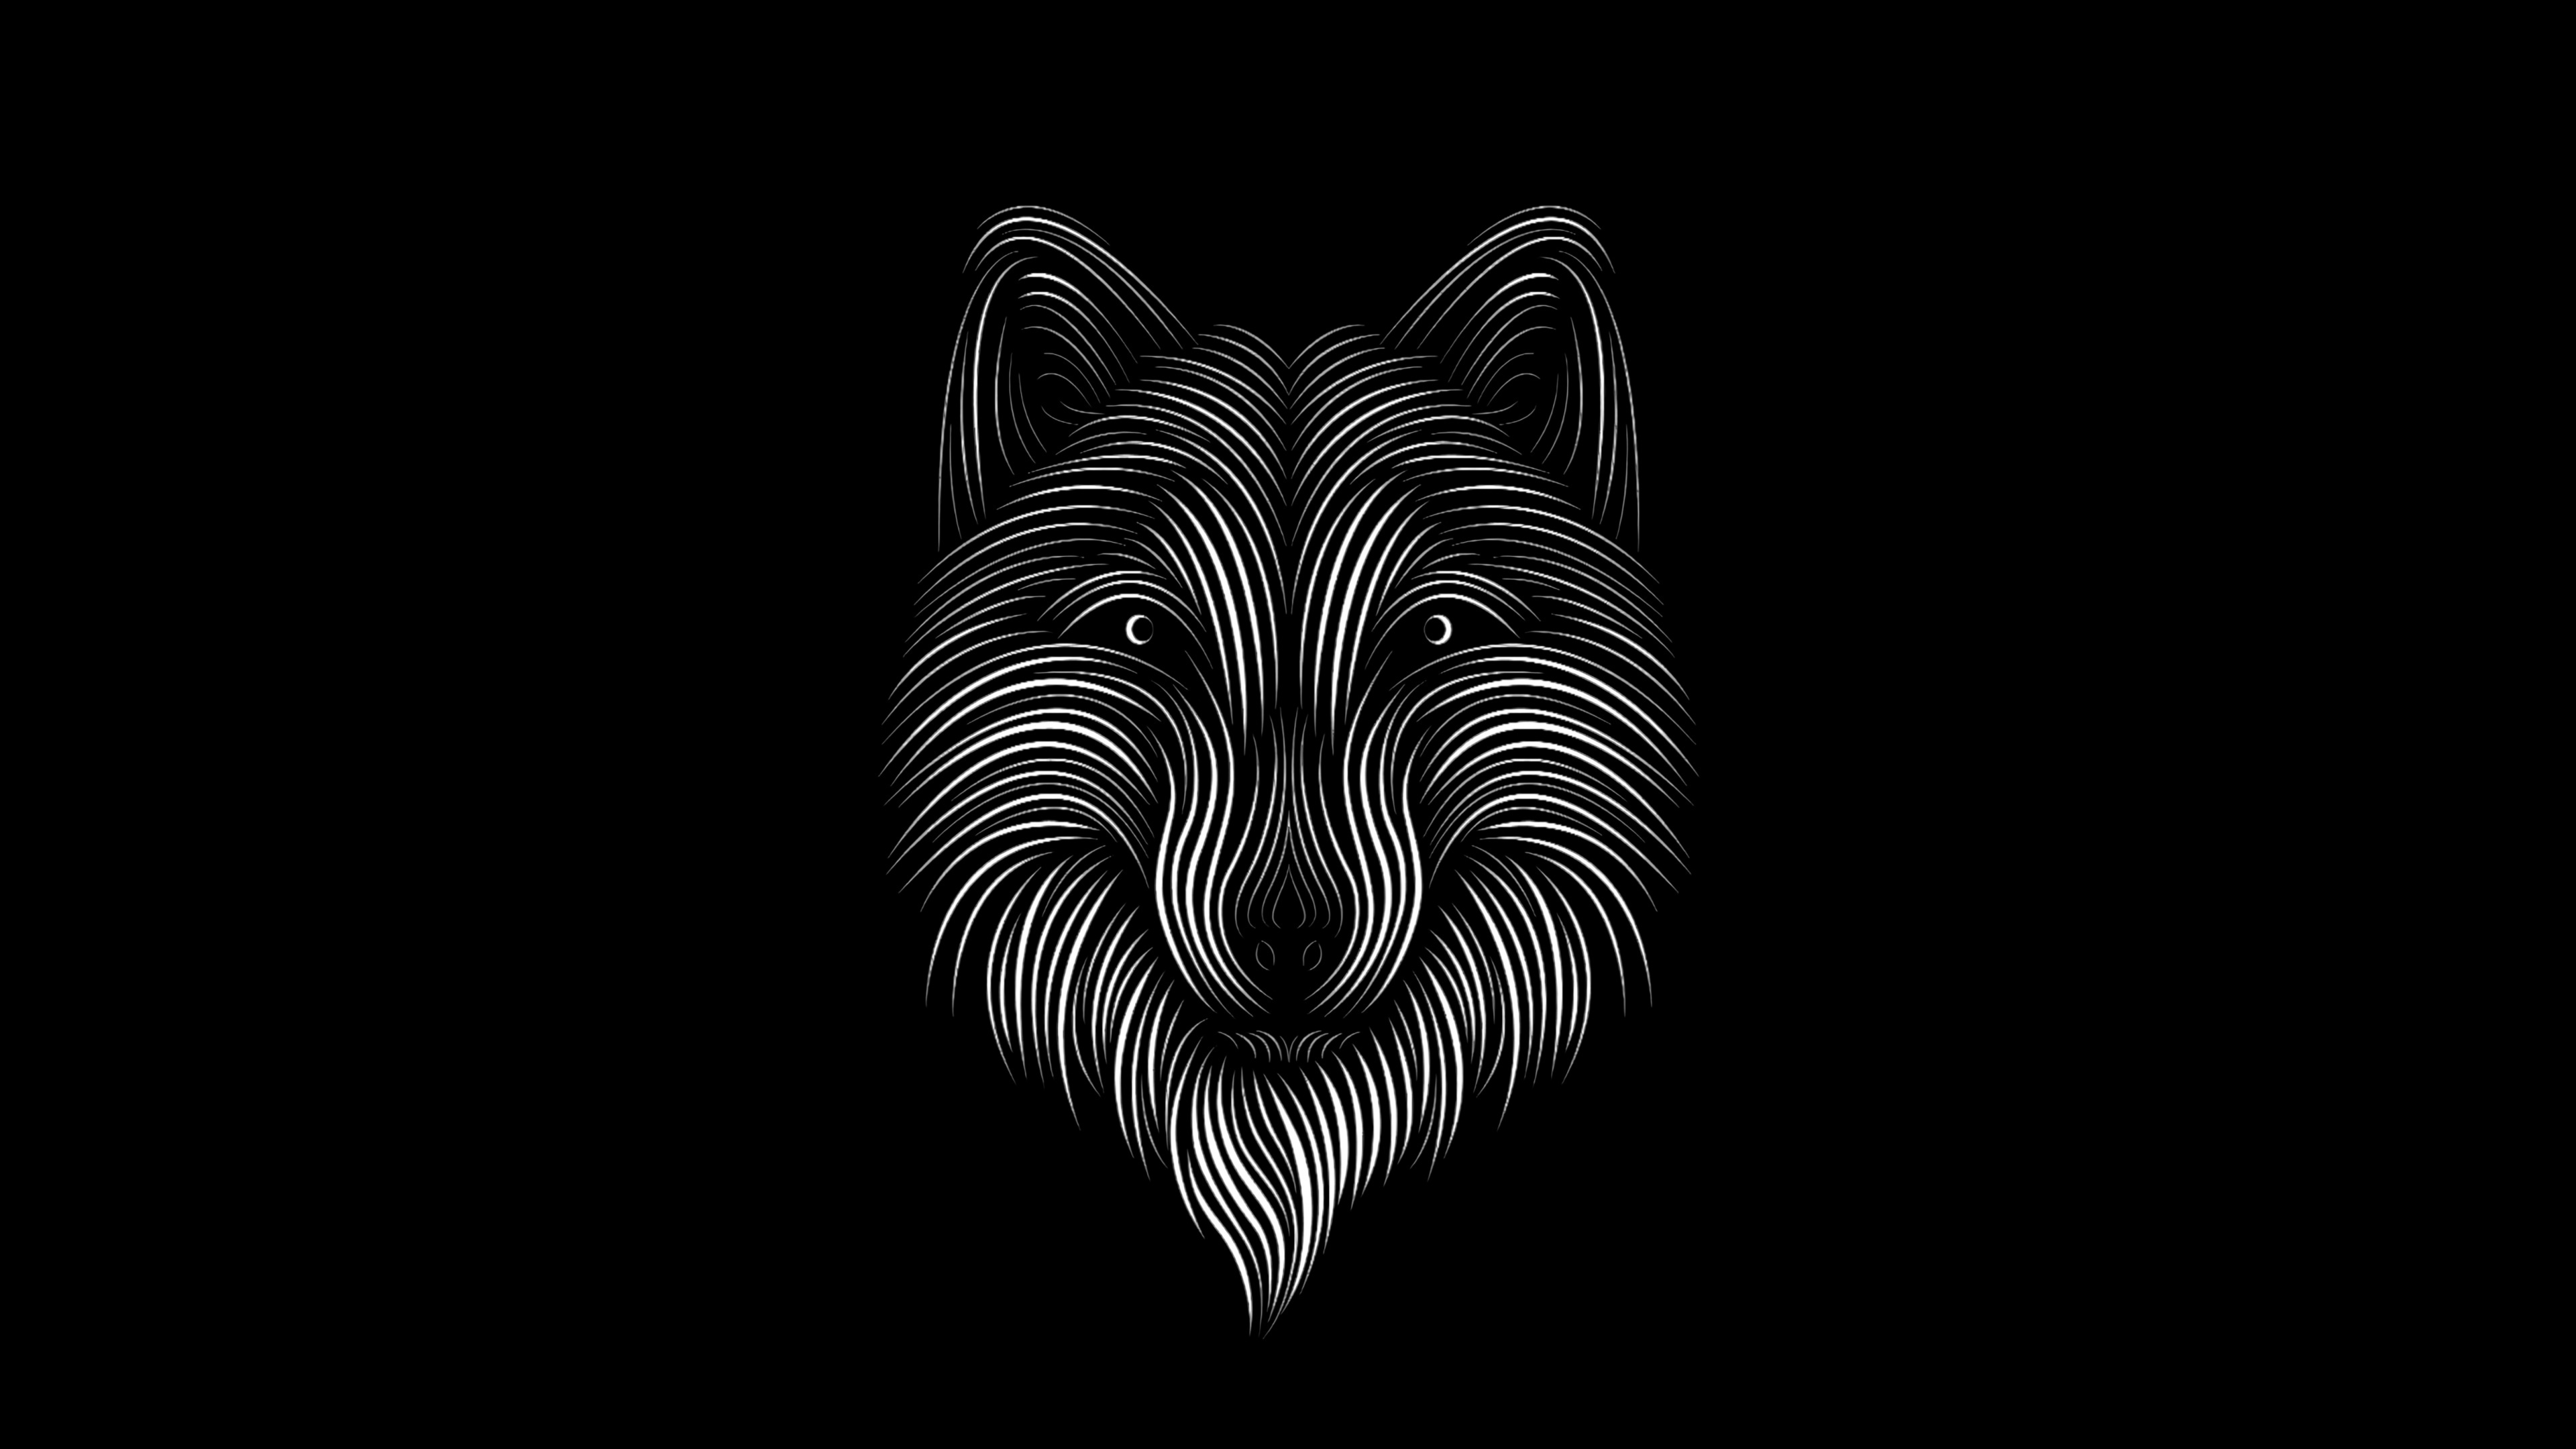 Schwarz-Weiß-Zebra-Illustration. Wallpaper in 3840x2160 Resolution